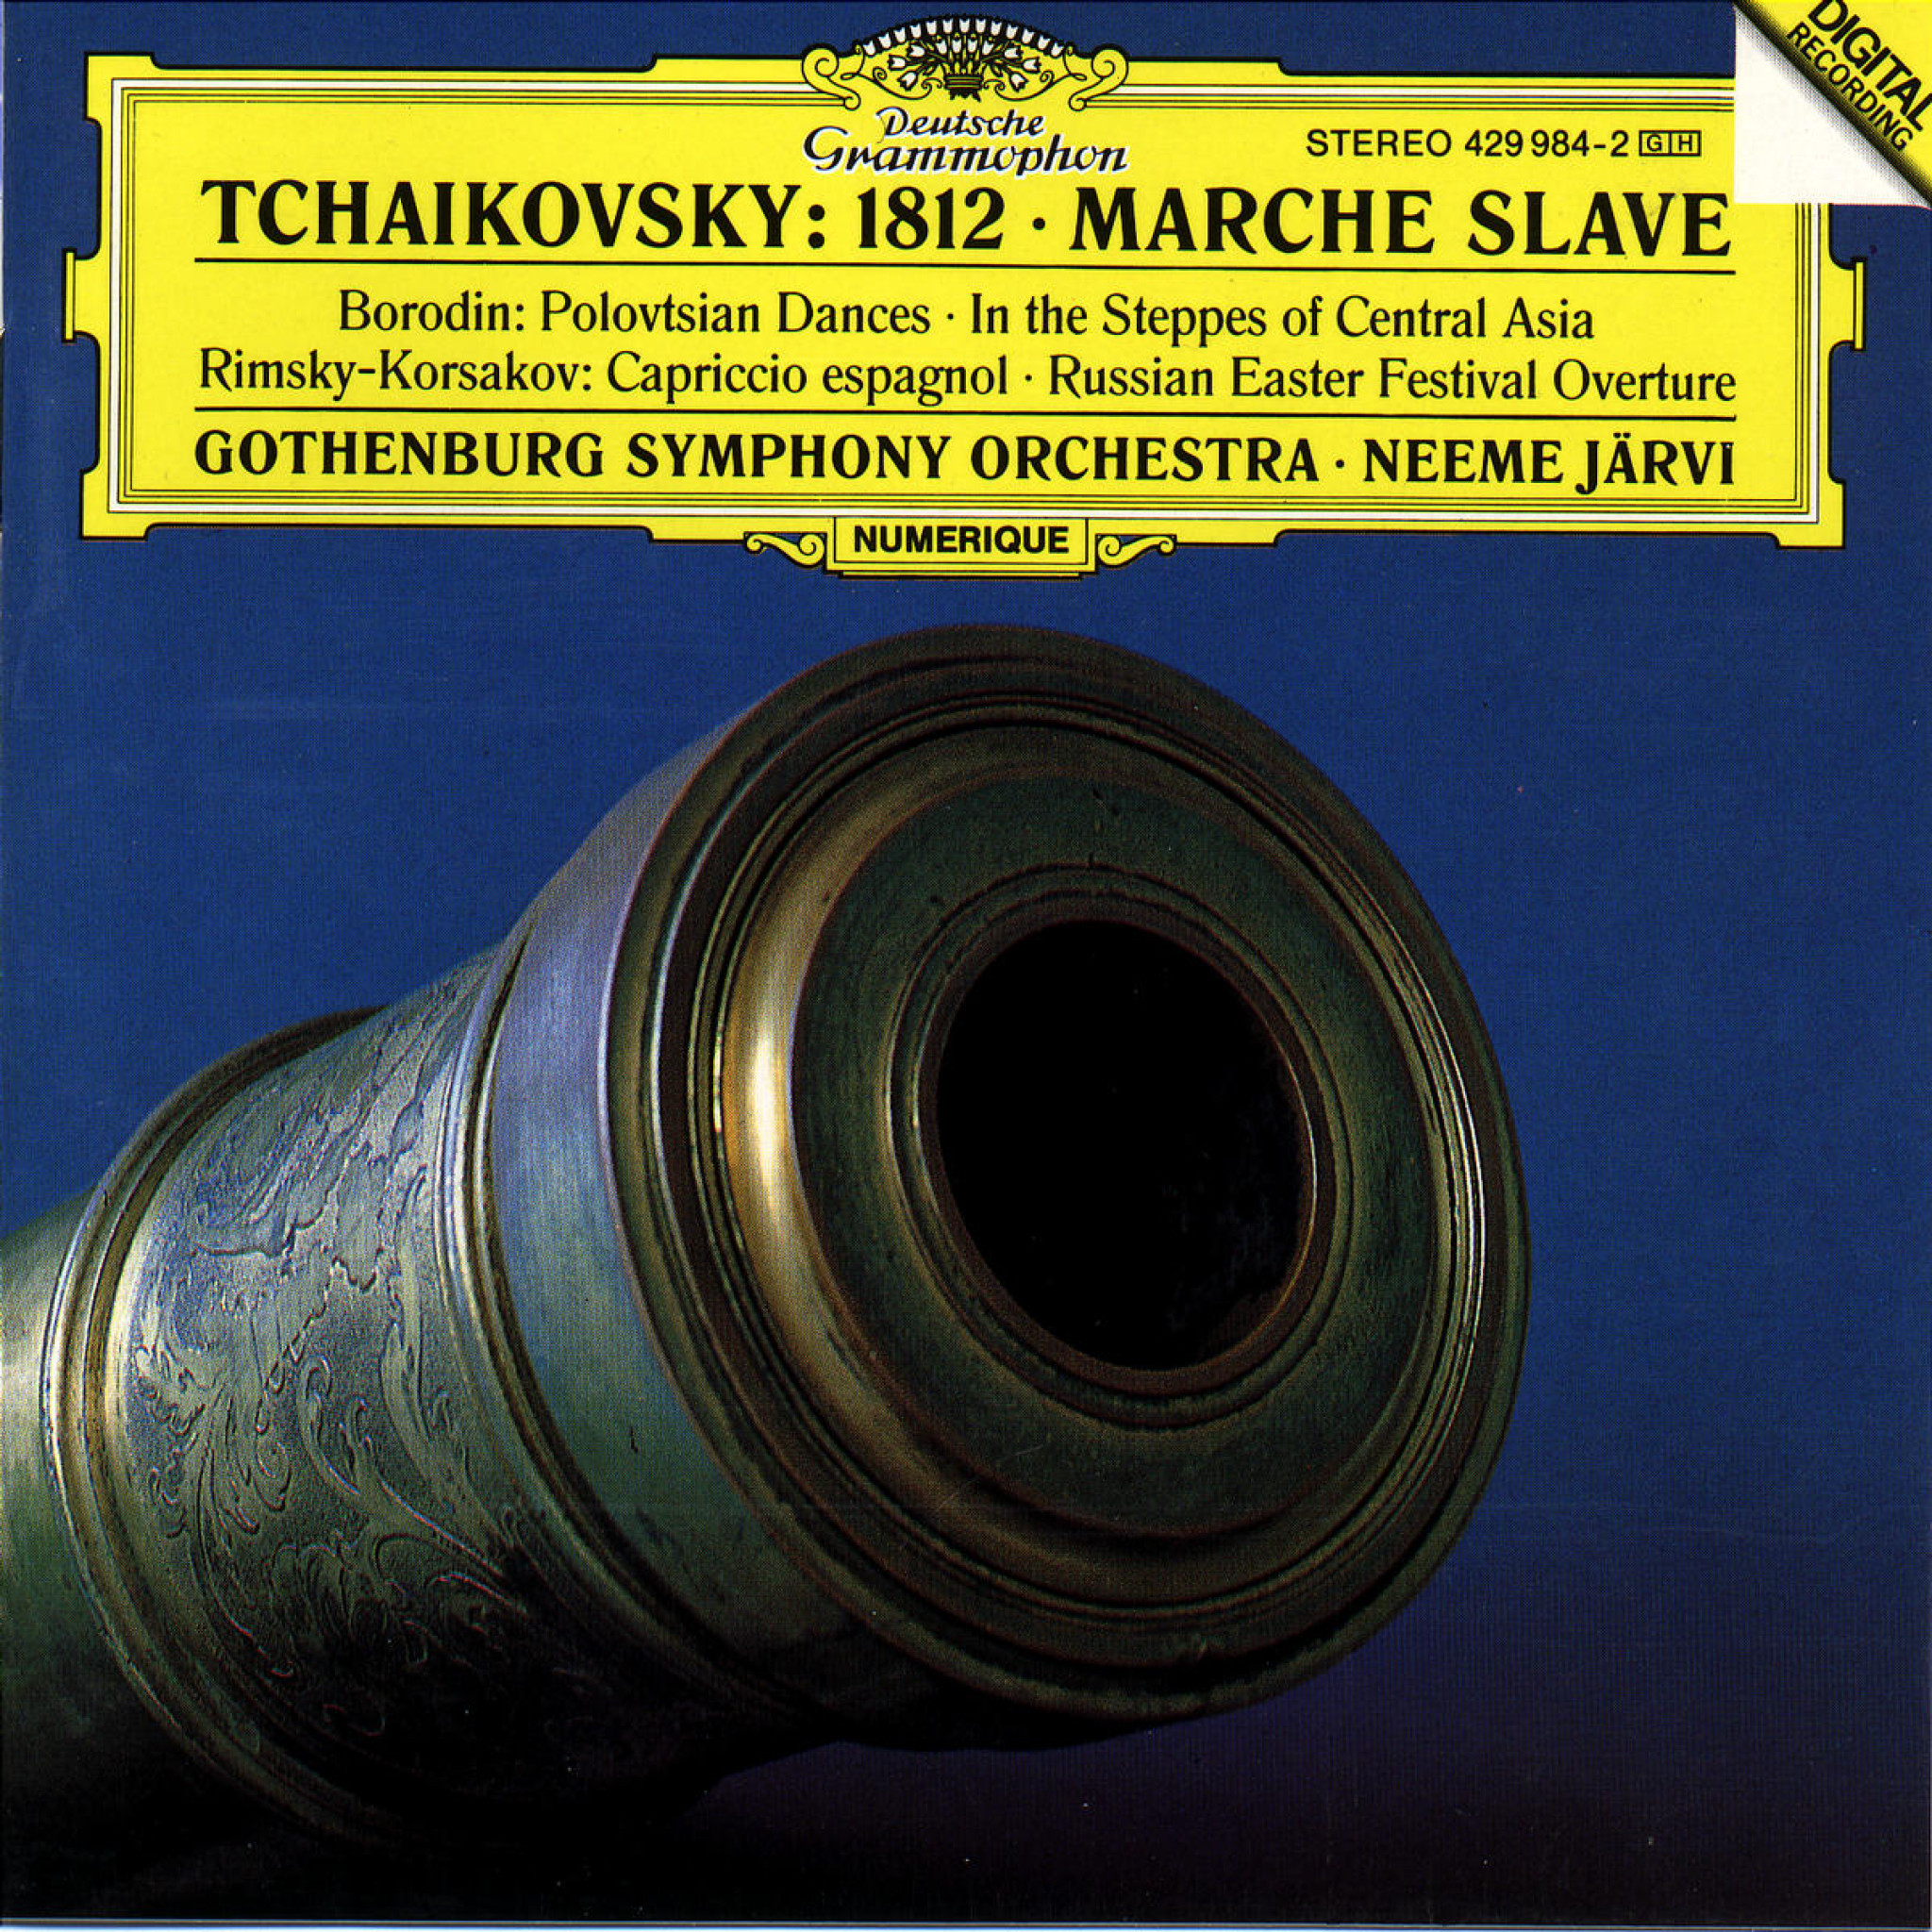 TCHAIKOVSKY »1812«, Marche slave / Järvi